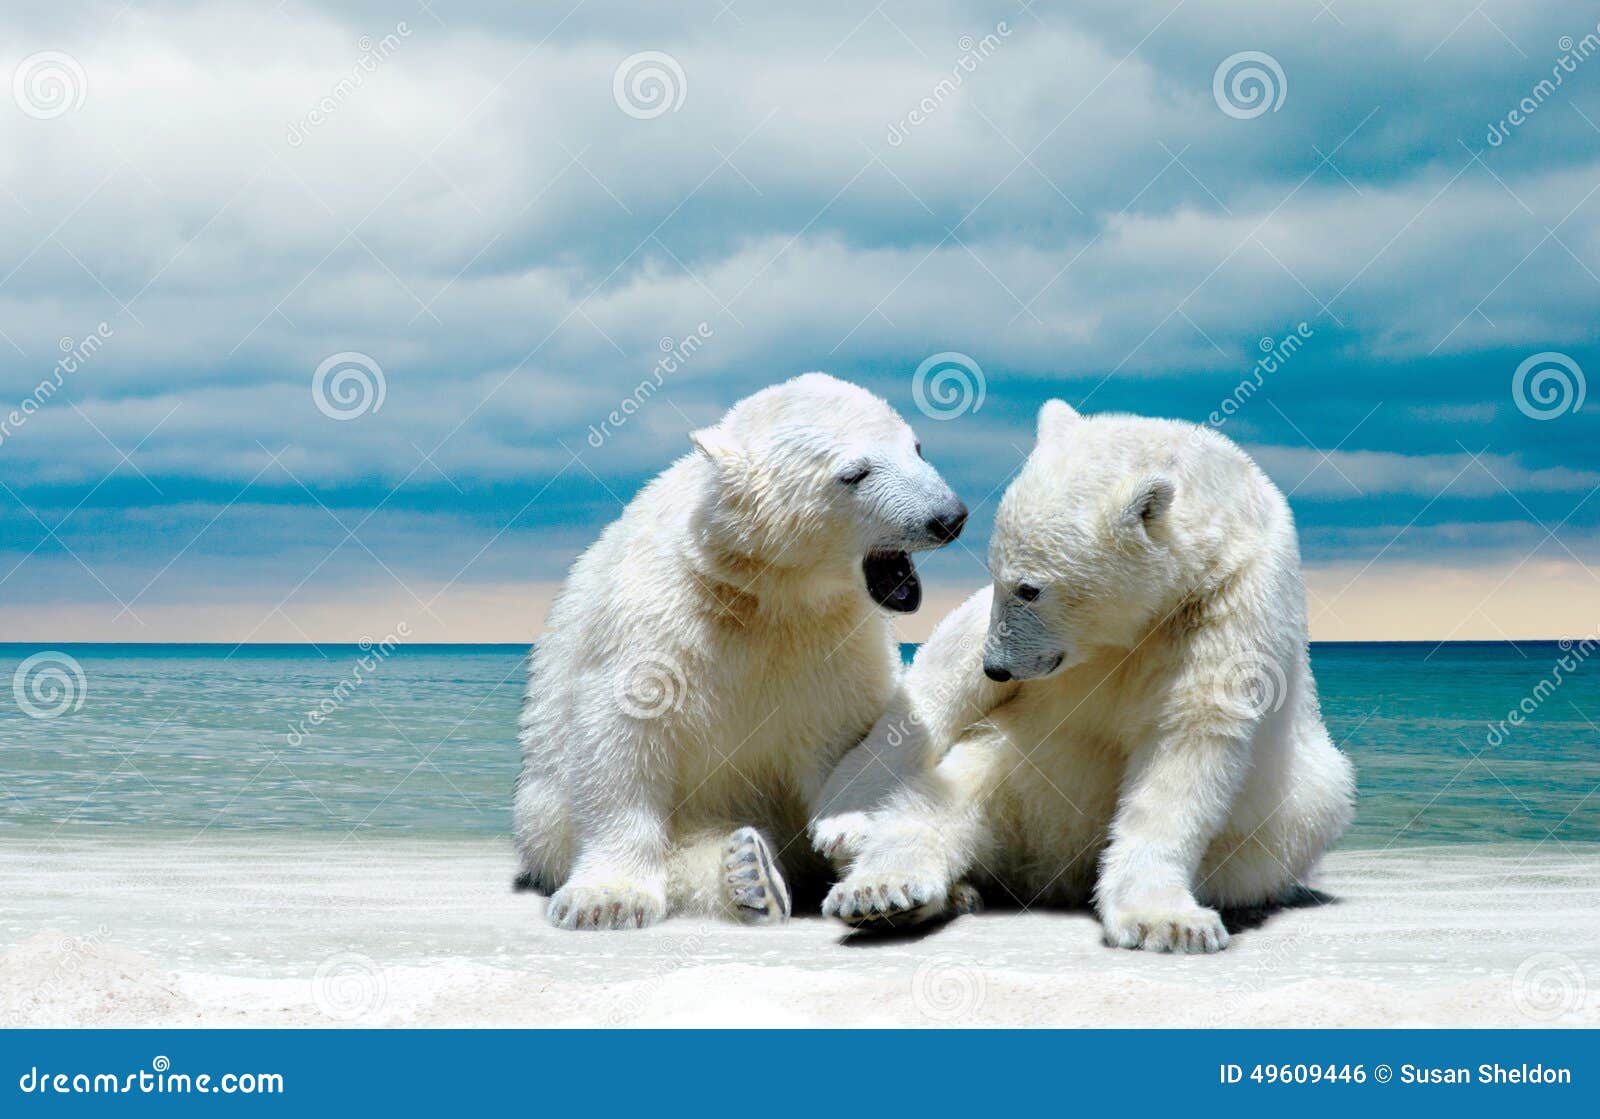 Image De Plage Avec Un Ours Polaire Petits Animaux D'ours Blanc Sur Une Plage D'hiver Photo stock - Image du  blanc, ours: 49609446